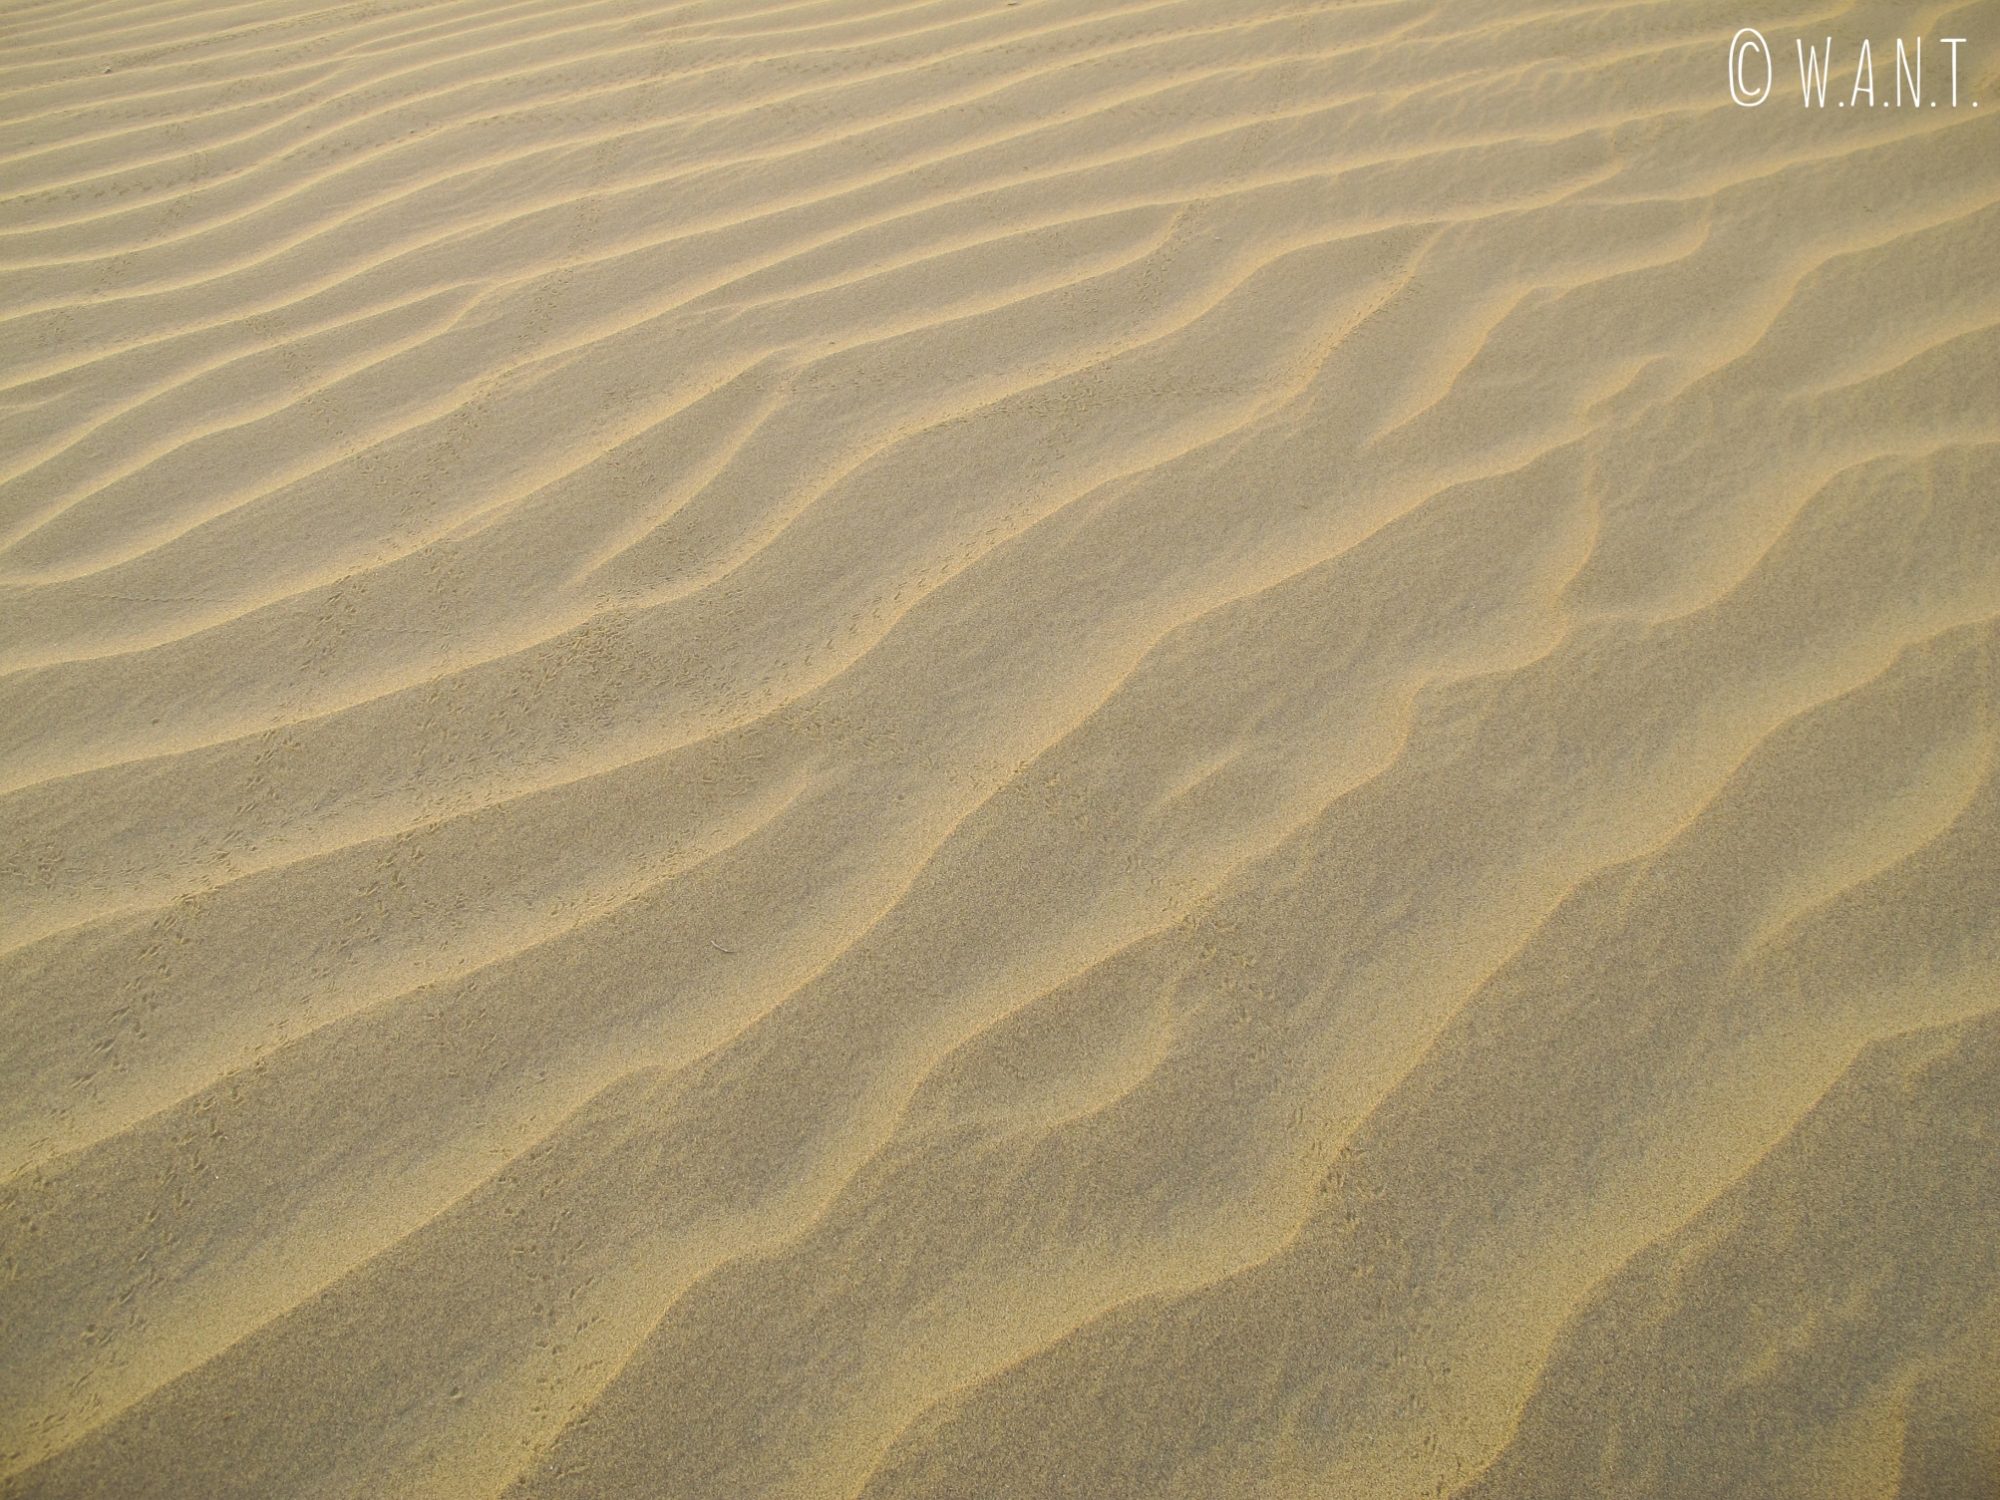 Les dunes du désert du Thar